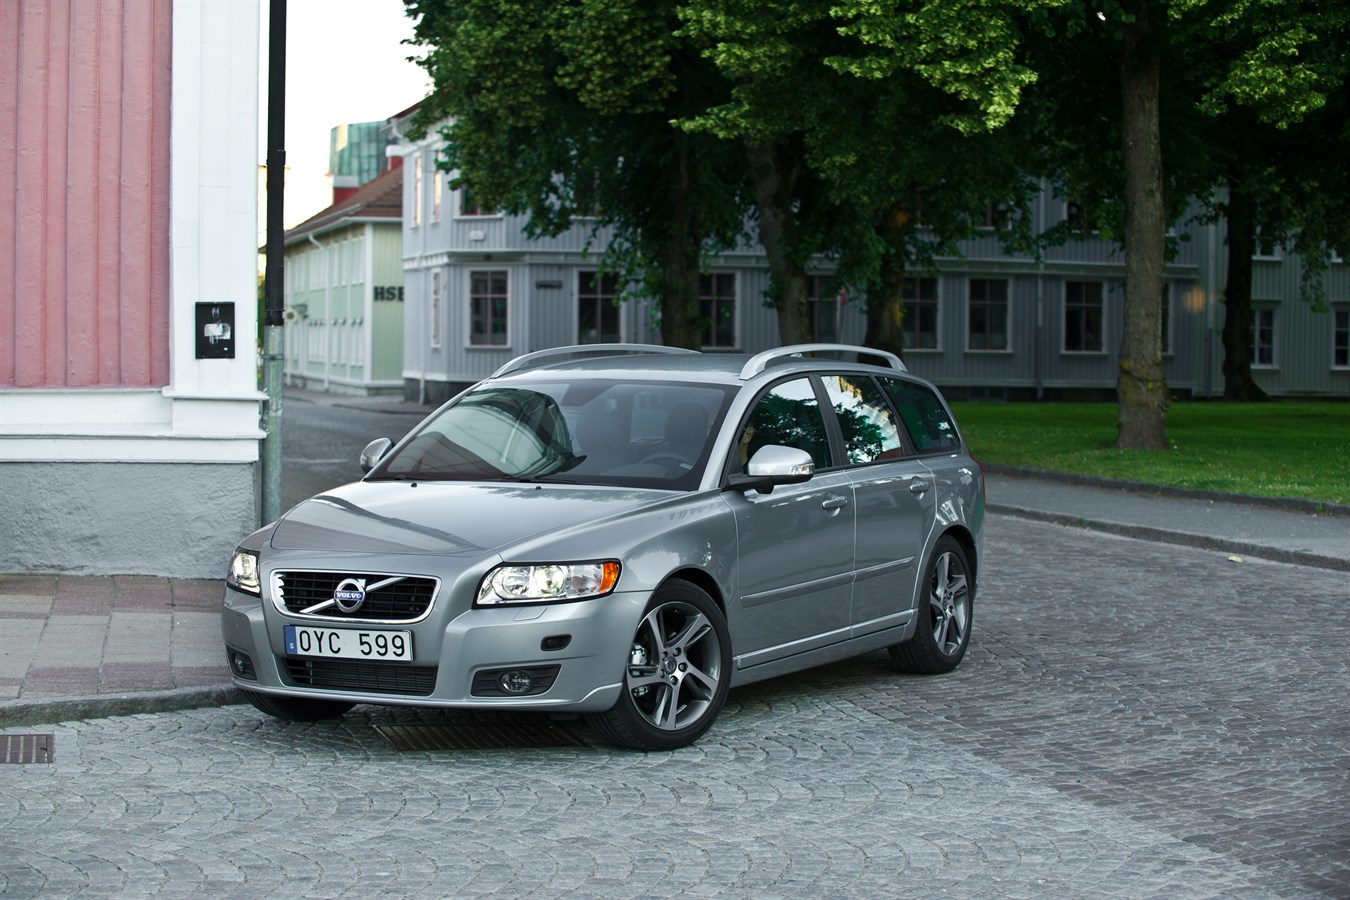 VOLVO V50 (2003-2012) - Volvo Cars of Canada Media Newsroom